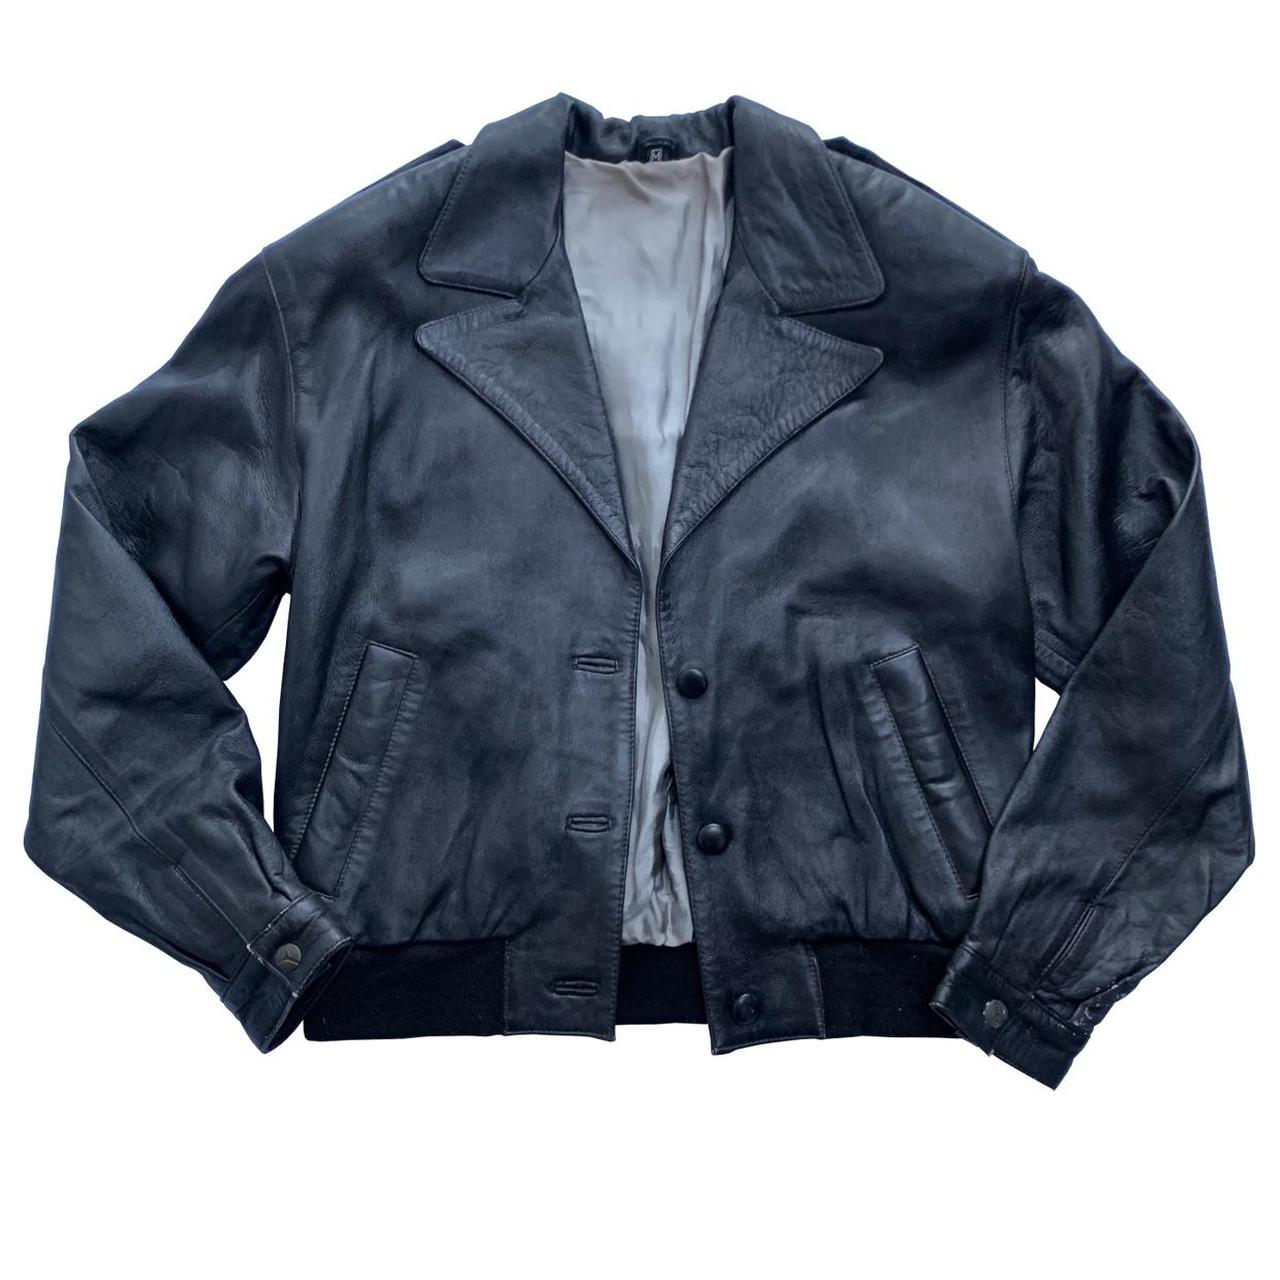 Vintage black faux leather bomber style jacket -... - Depop